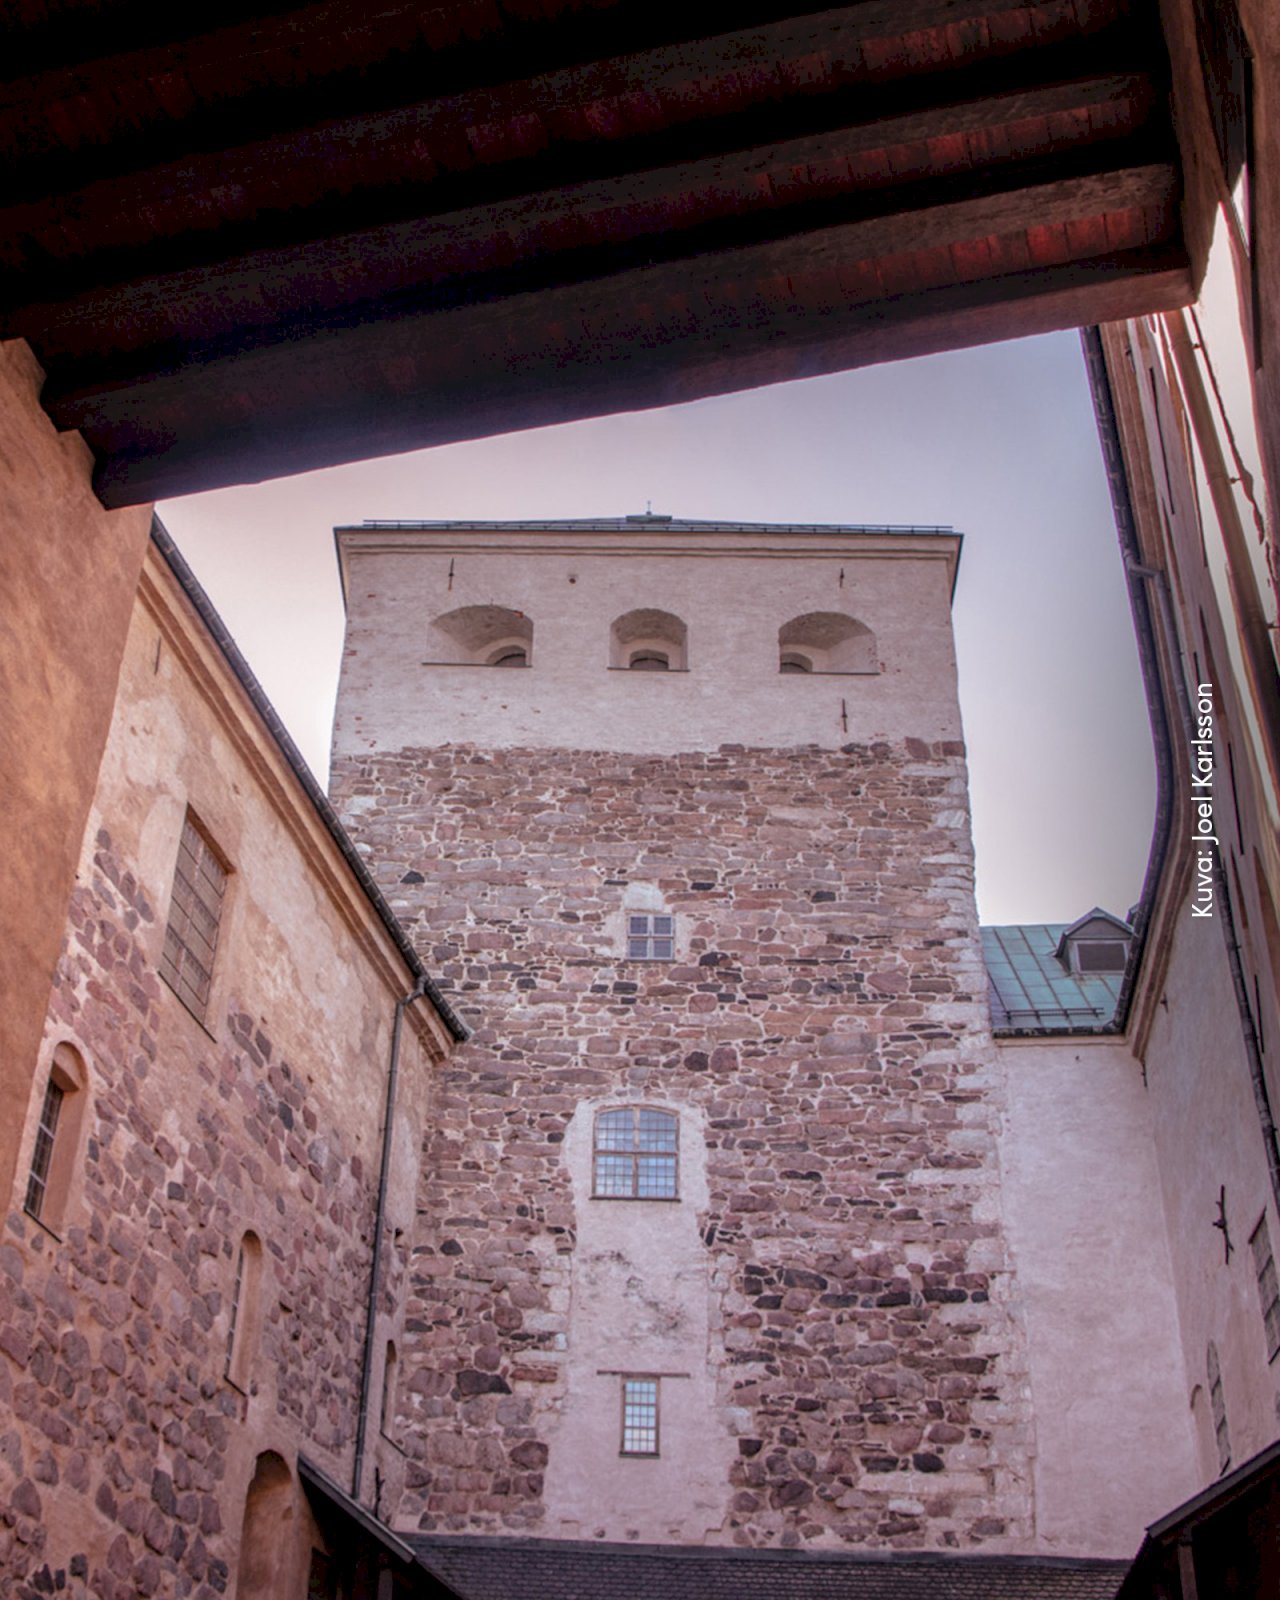 Turun linnan seiniä sisäpihalta kuvattuna.